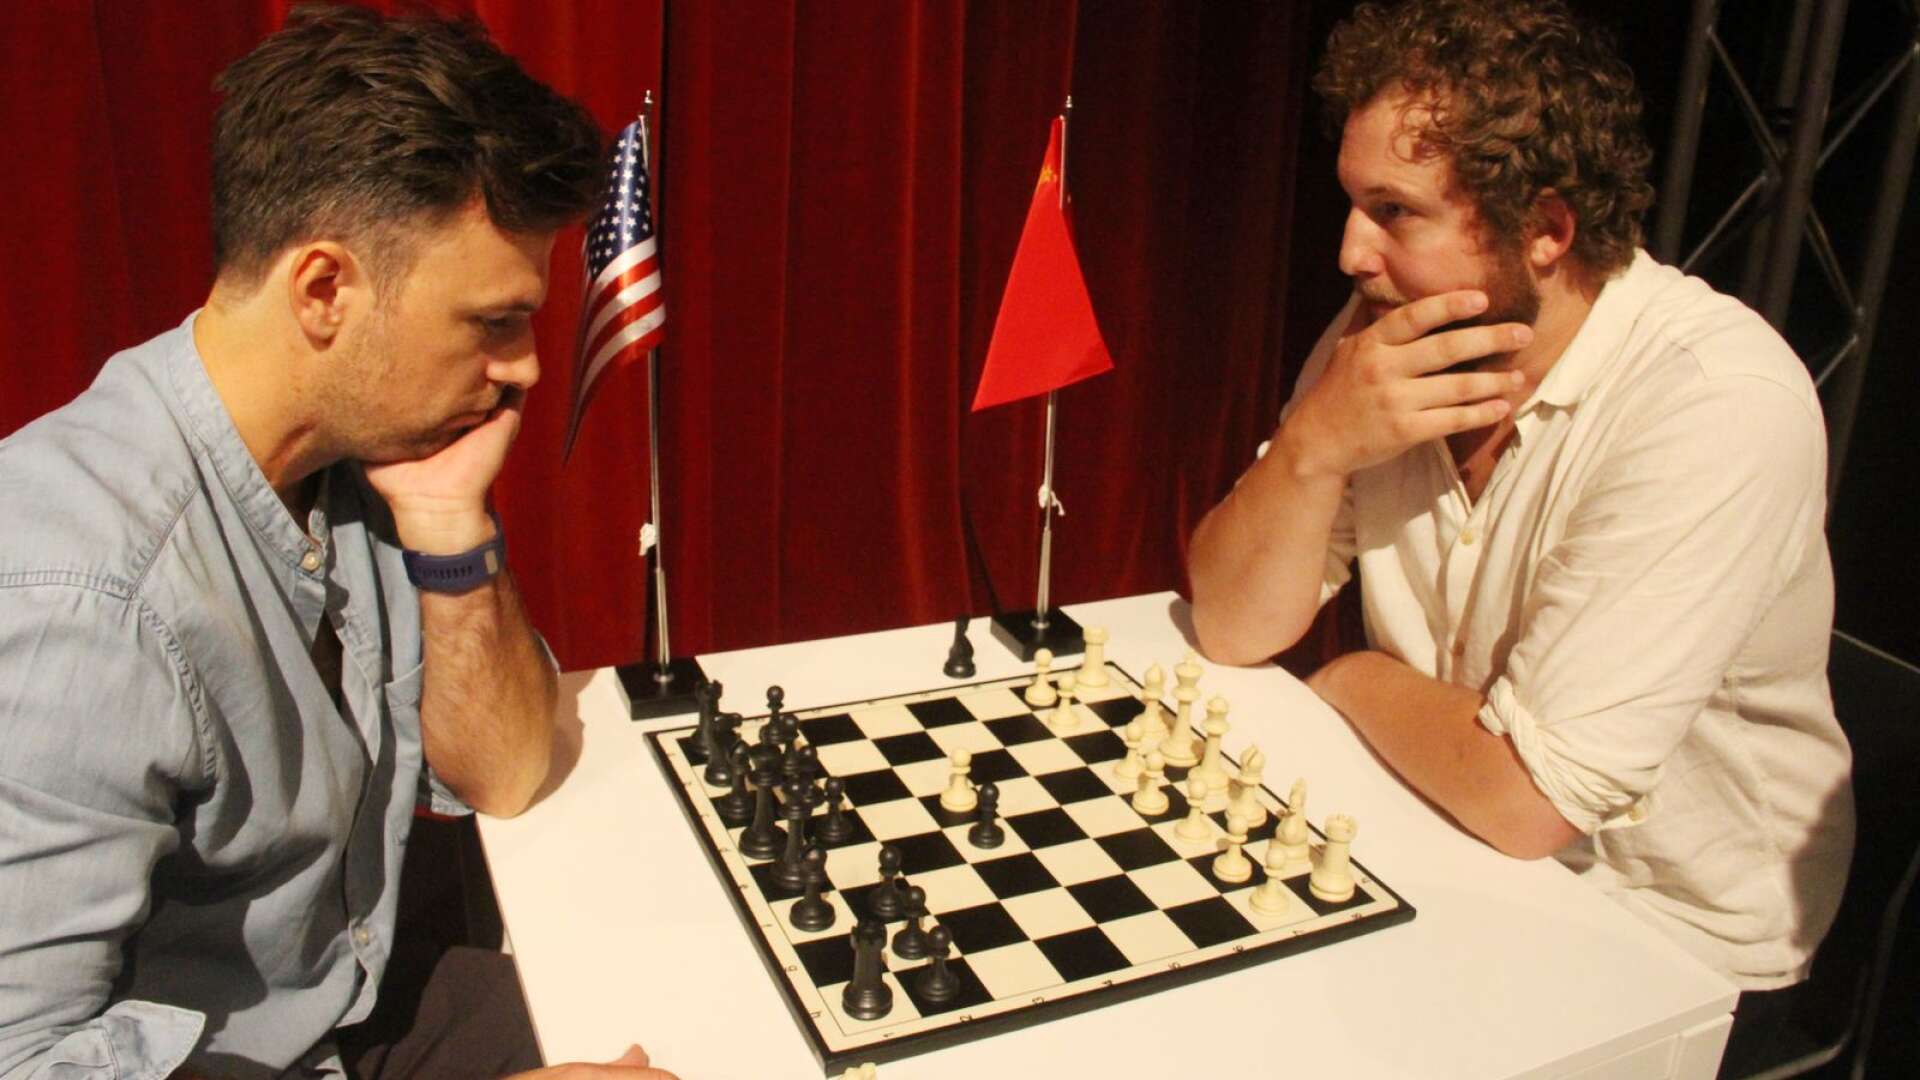 Chess har premiär den 5 oktober. Rollerna som de två schackspelarna görs av Jonas Wåhlin och Joel Zerpe.